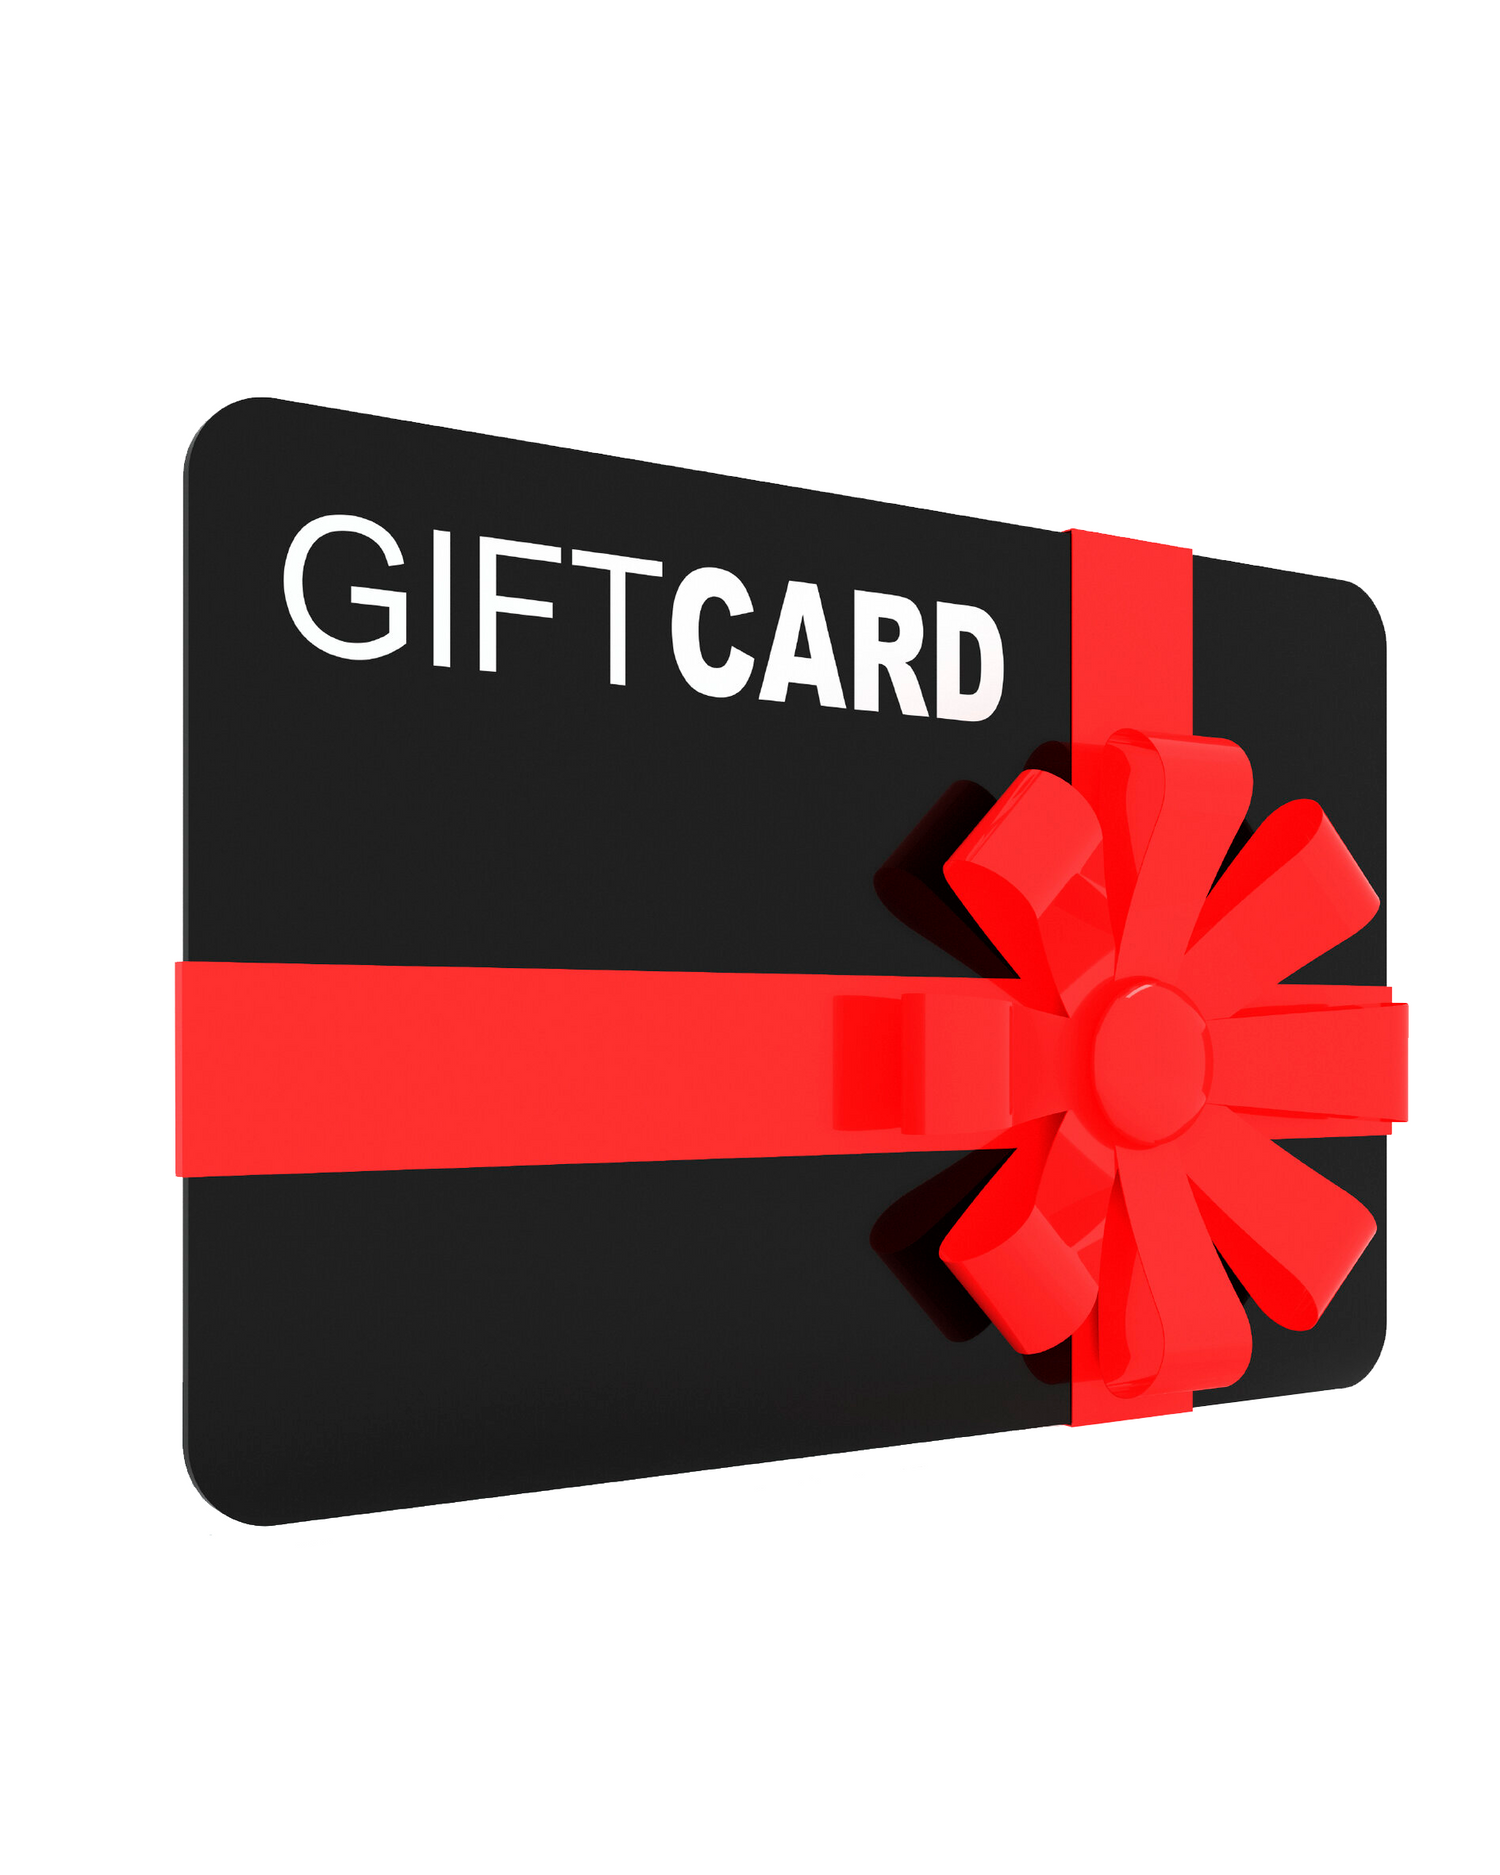 DITOK Gift Card-10%0ff More